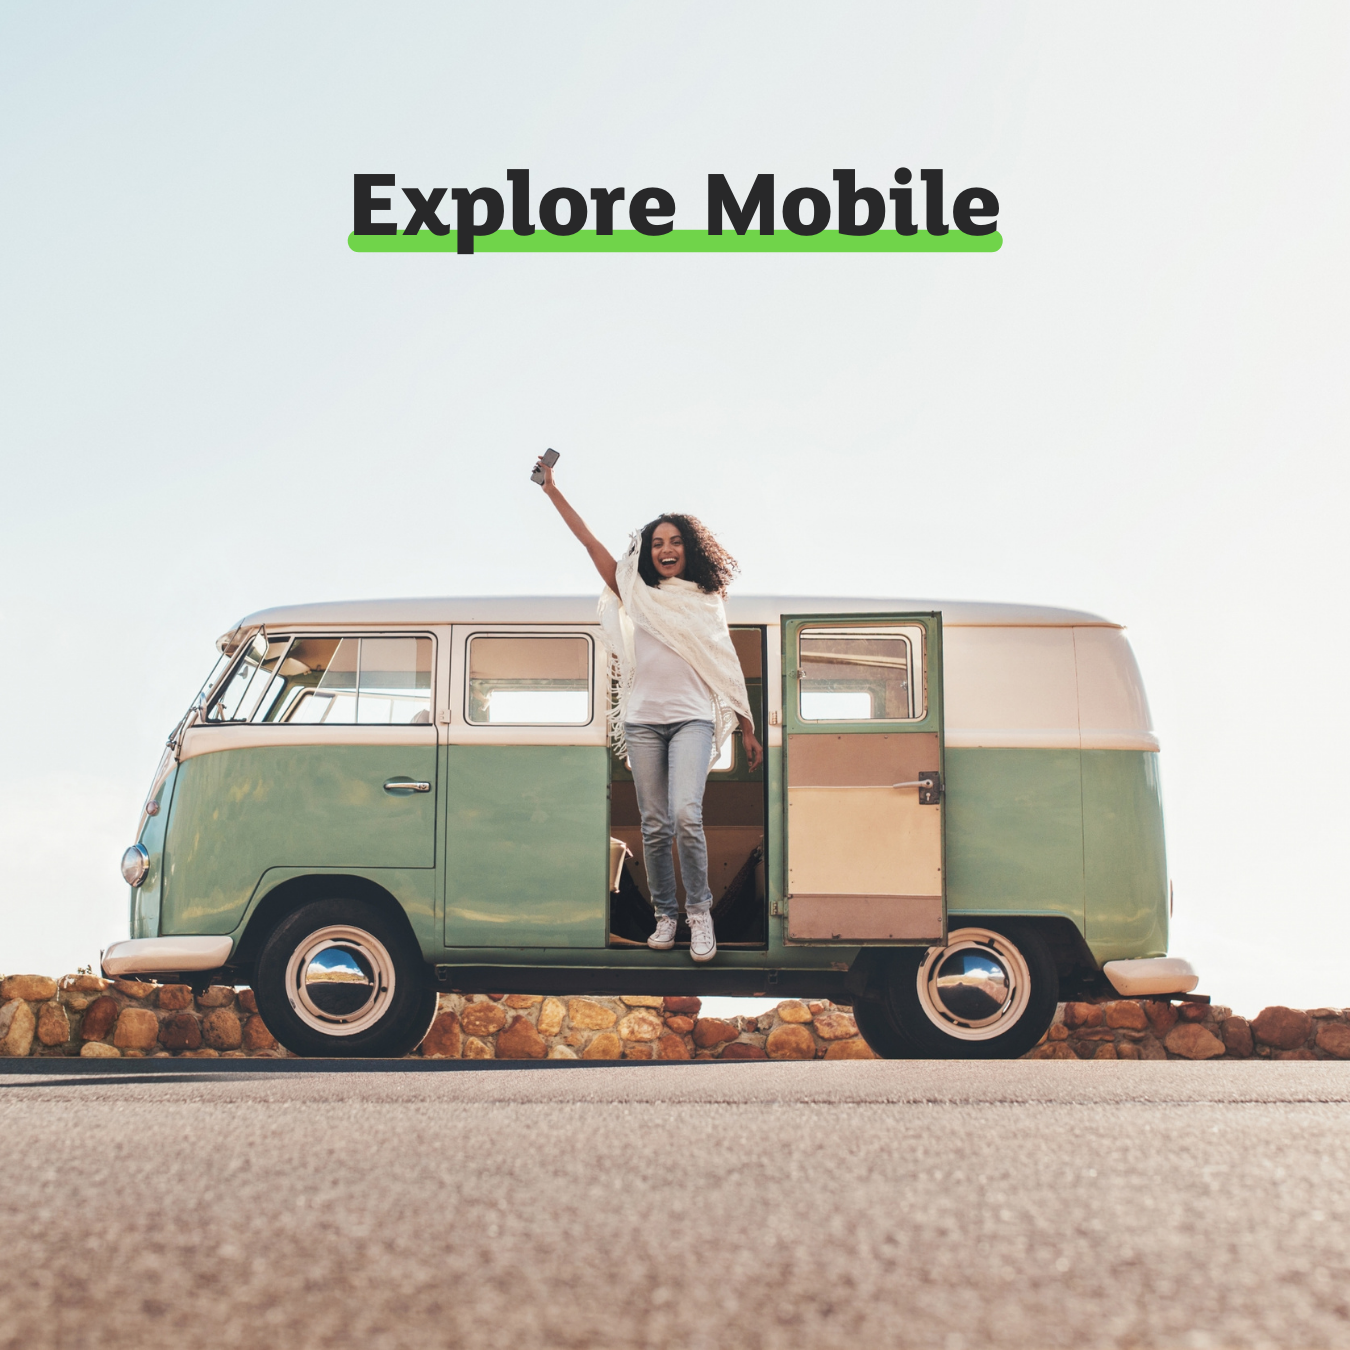 Explore mobile